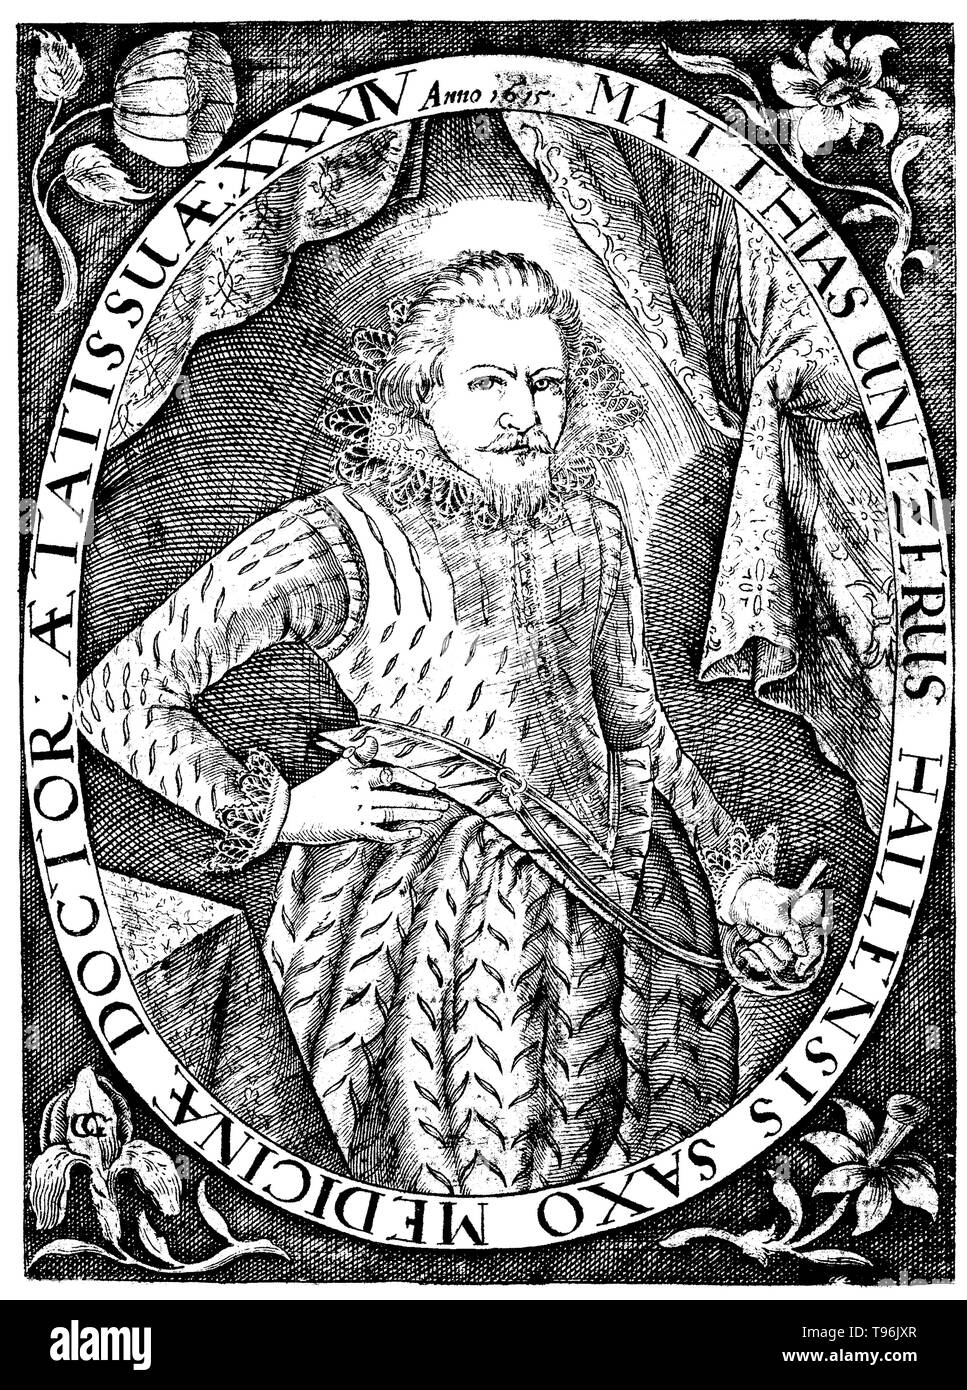 Matthias Untzer (1581-1624) war ein deutscher Arzt. Er studierte in Leipzig, Tübingen und Padua und qualifizierte sich als Arzt in Basel. Er war ein iatrochemist, eine Disziplin, die versucht, chemische und alchemistischen Prinzipien zu Medizin und die Behandlung von Krankheiten zu übernehmen. Zu seinen Werken zählen 'De Organische Crackprodukte Tractatus Medico-Chymicus' (1620) und "Anatomia Mecurii Spagirica' (1620). Kunstwerke aus Unzter's 'Katoptron Ioimodes", ein Buch über die pestepidemie. Zeile Gravur von C.G. Grahl, 1615. Stockfoto